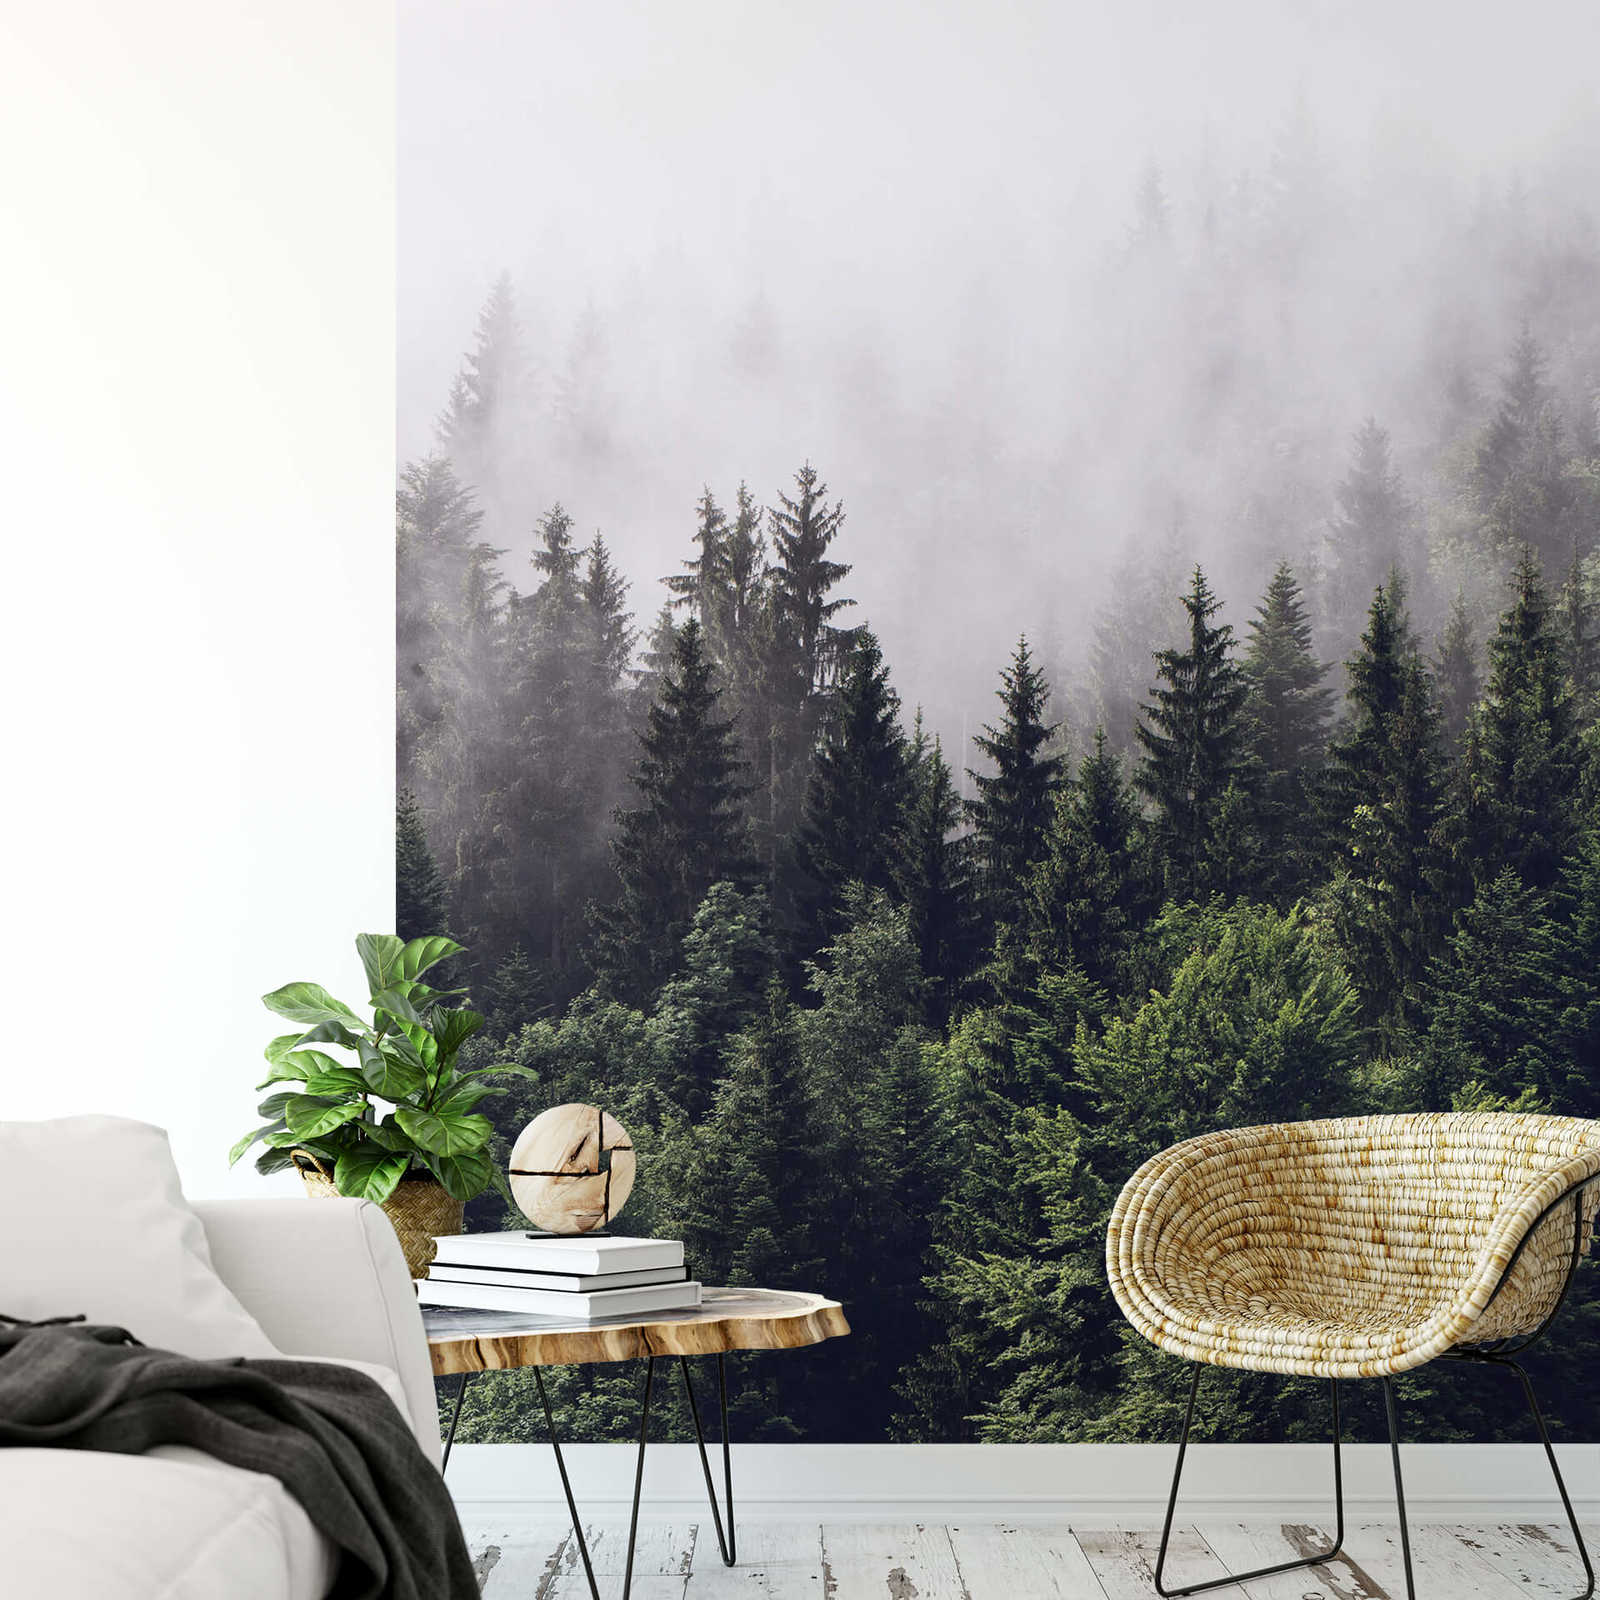             Fototapete Nebelwald im Hochformat – Grün, Weiß
        